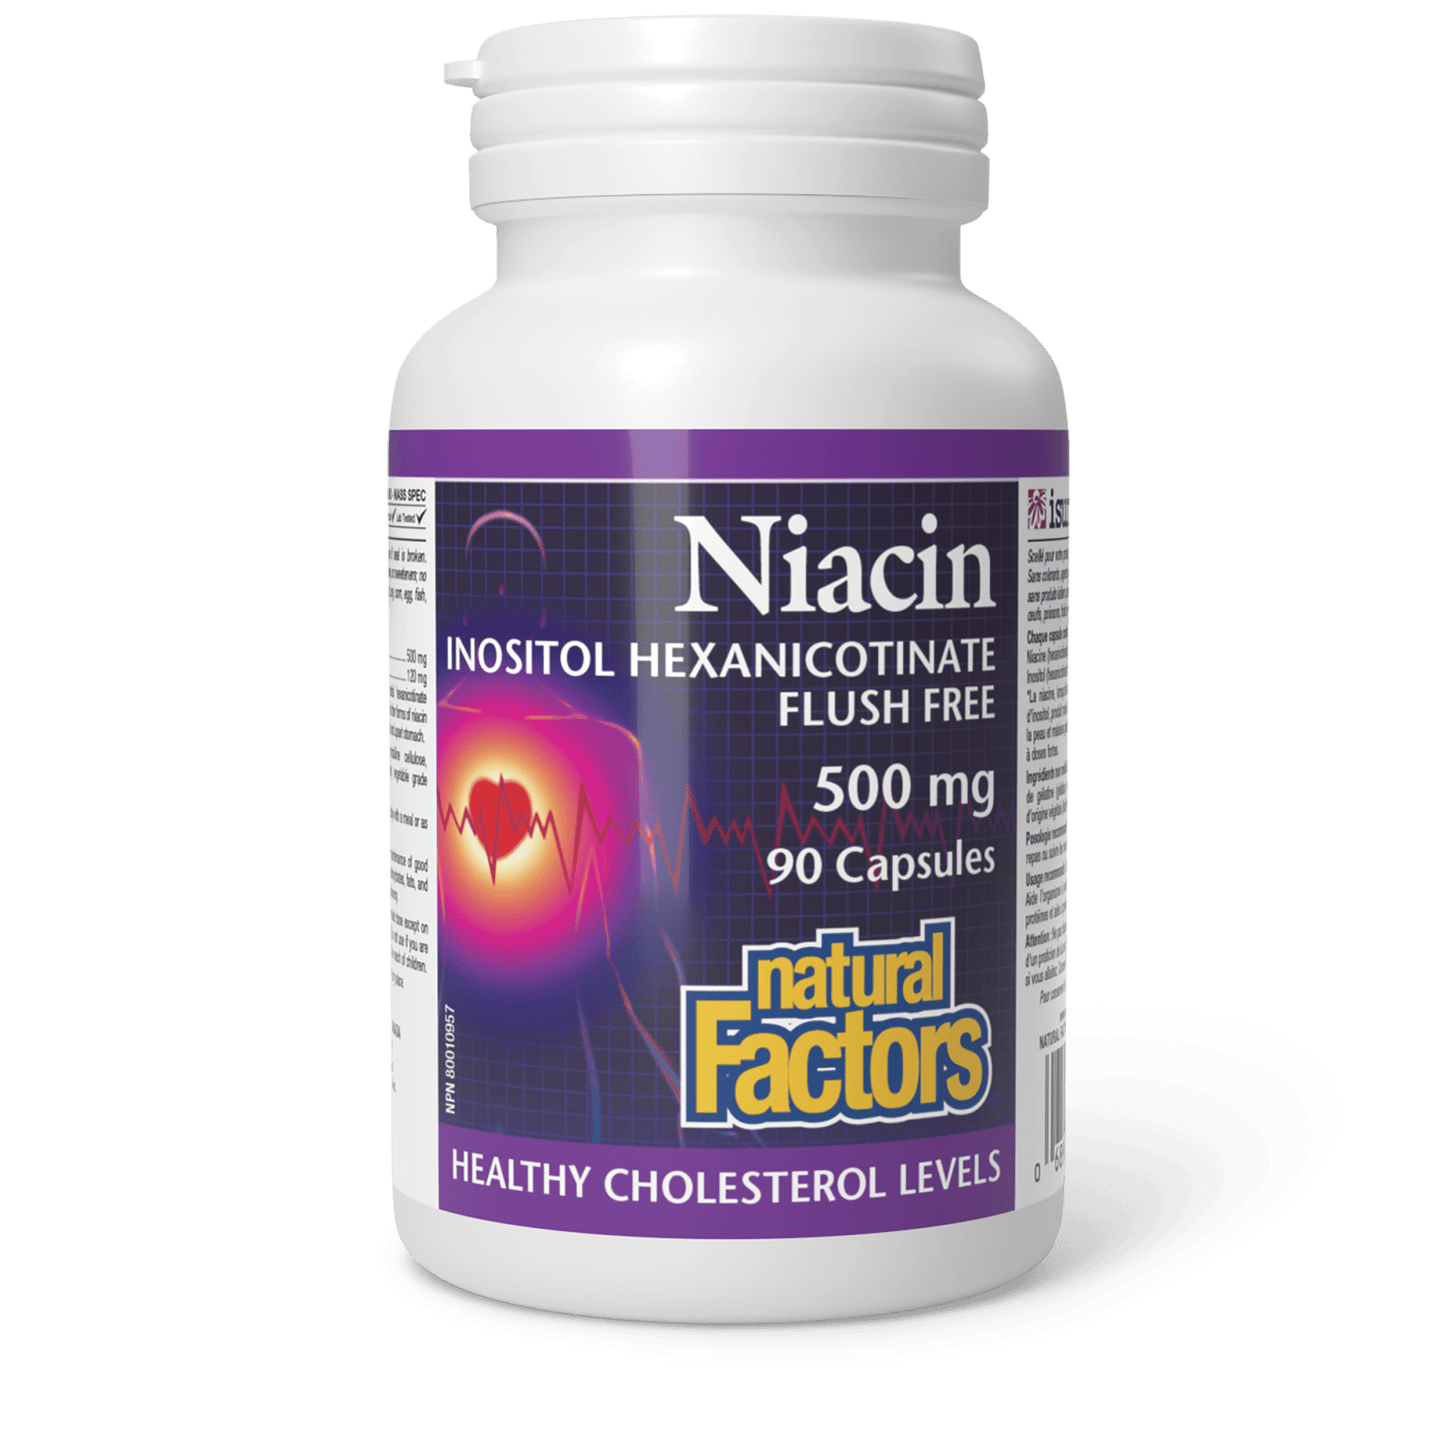 Niacin 500 mg, Natural Factors|v|image|1223